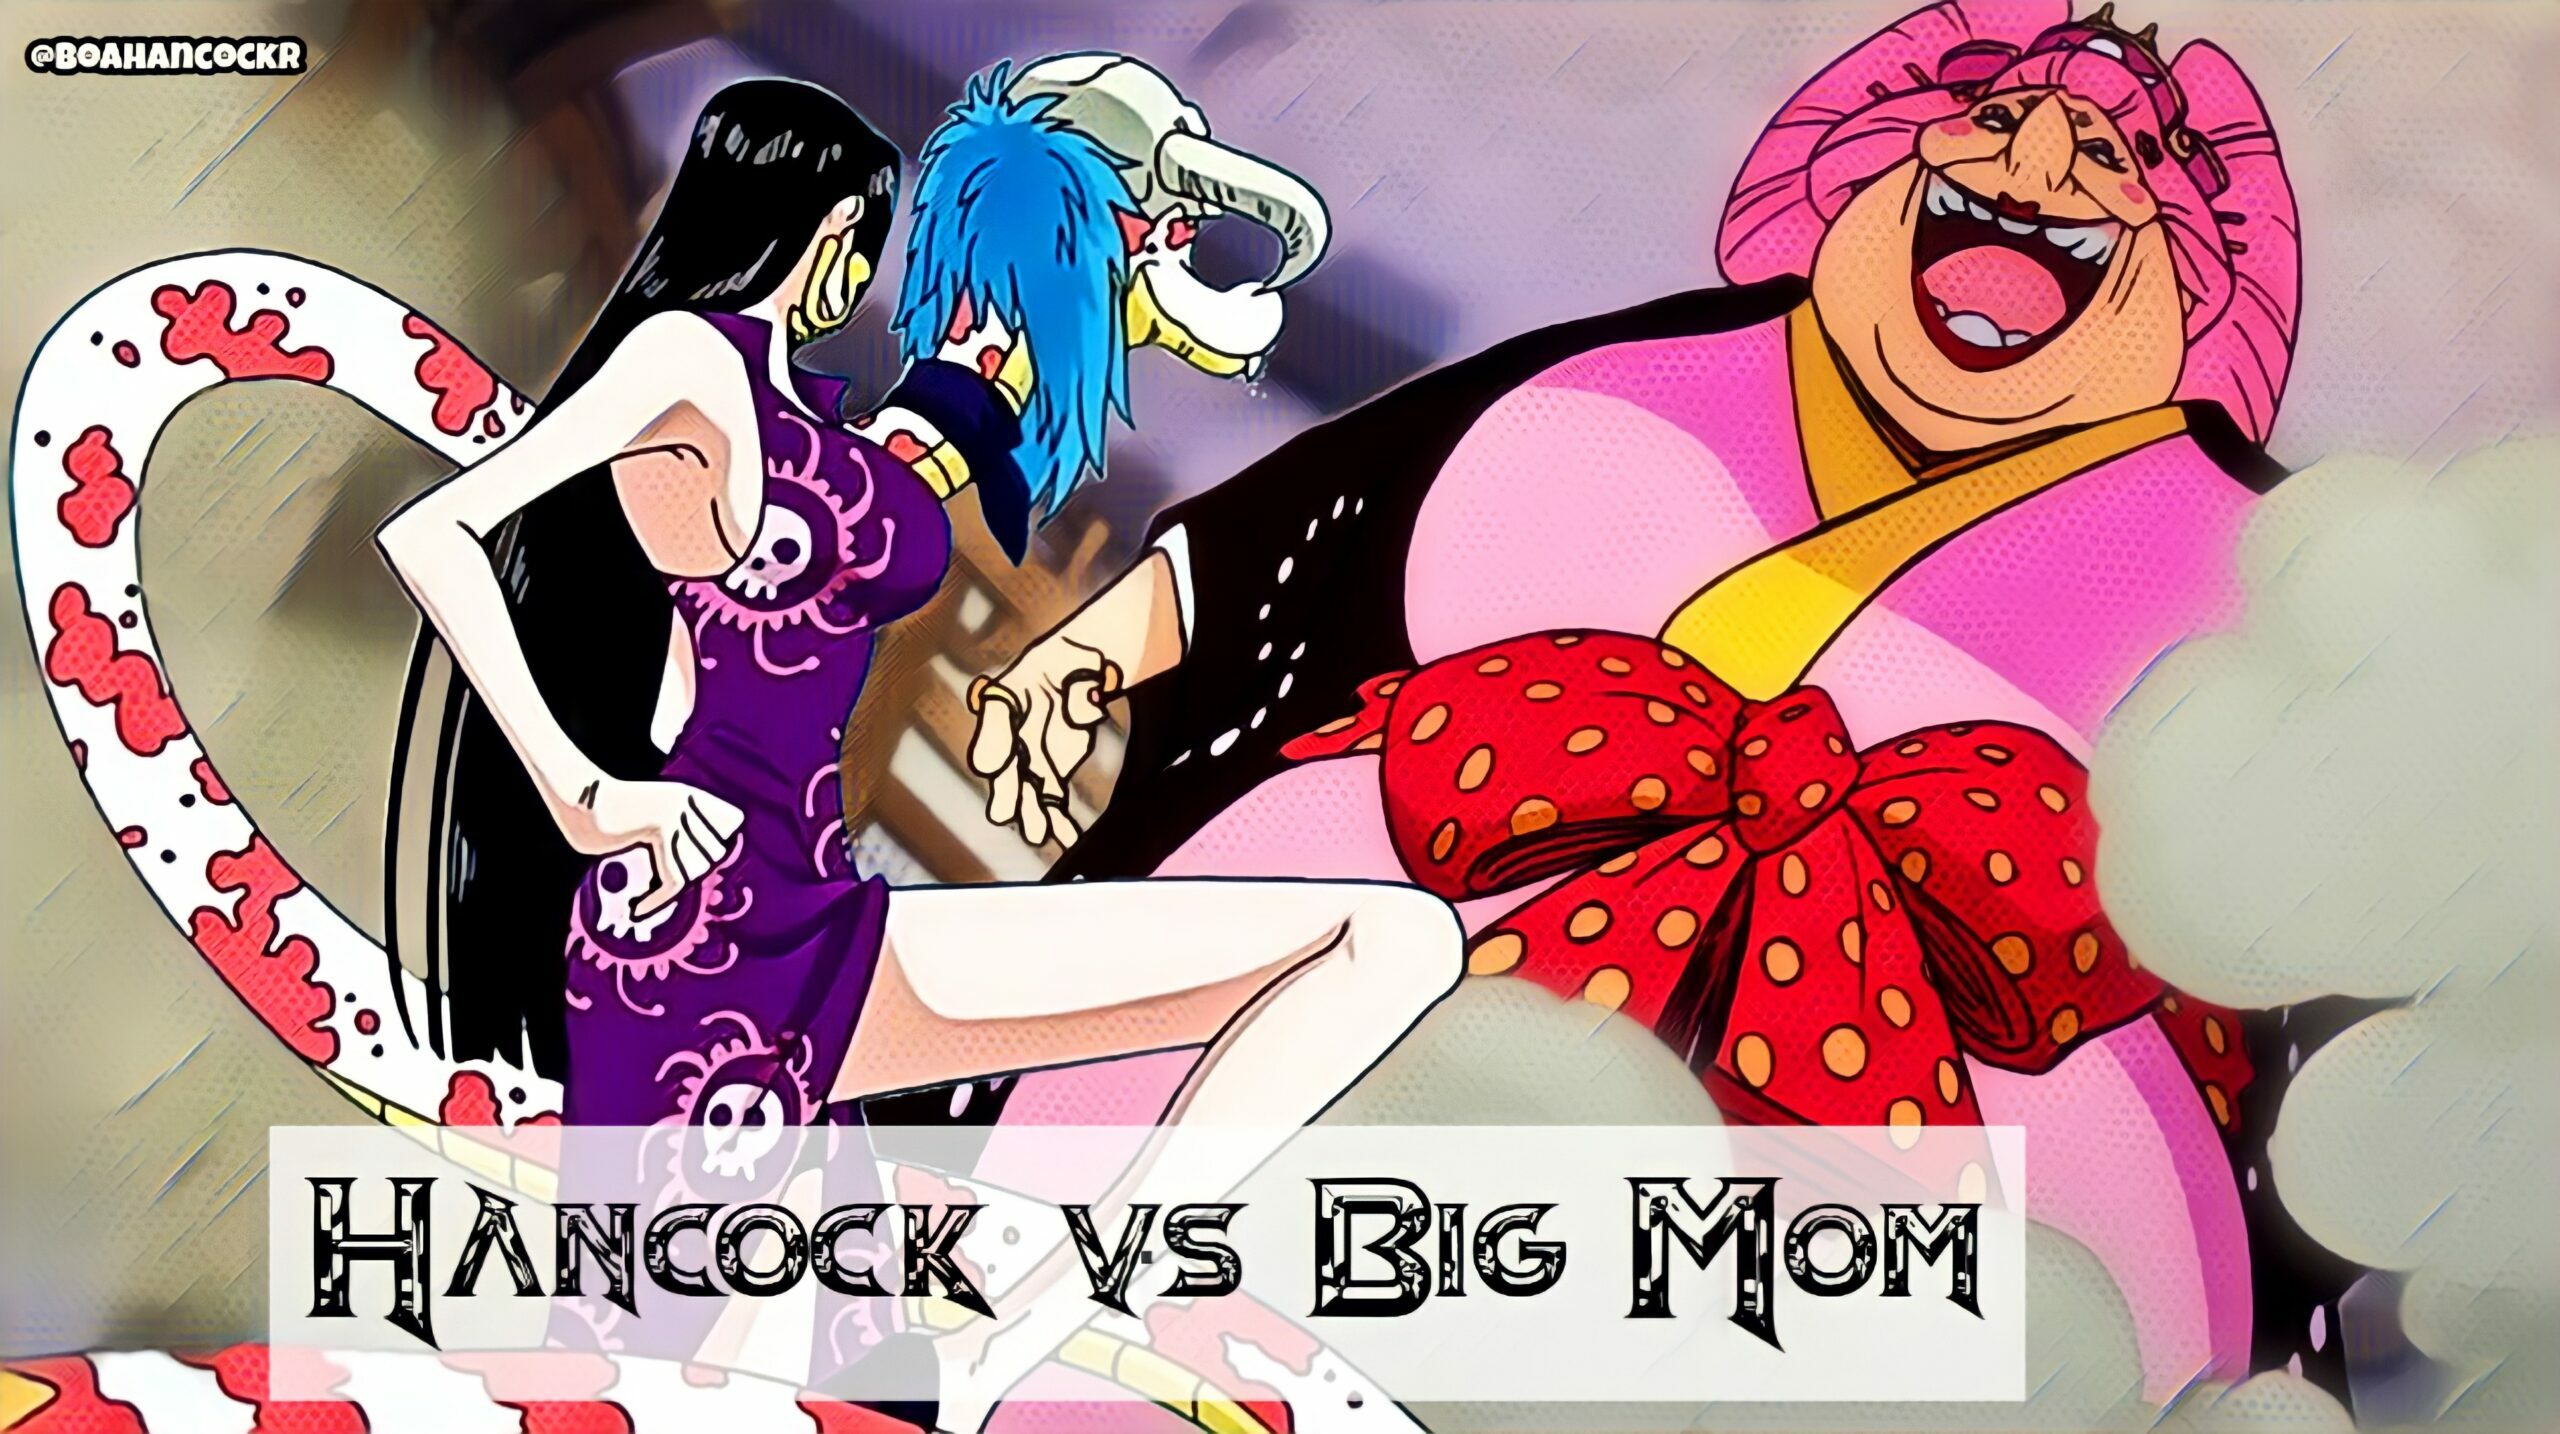 Boa Hancock vs Big Mom (sumber: images-wixmp-ed30a86b8c4ca887773594c2.wixmp)